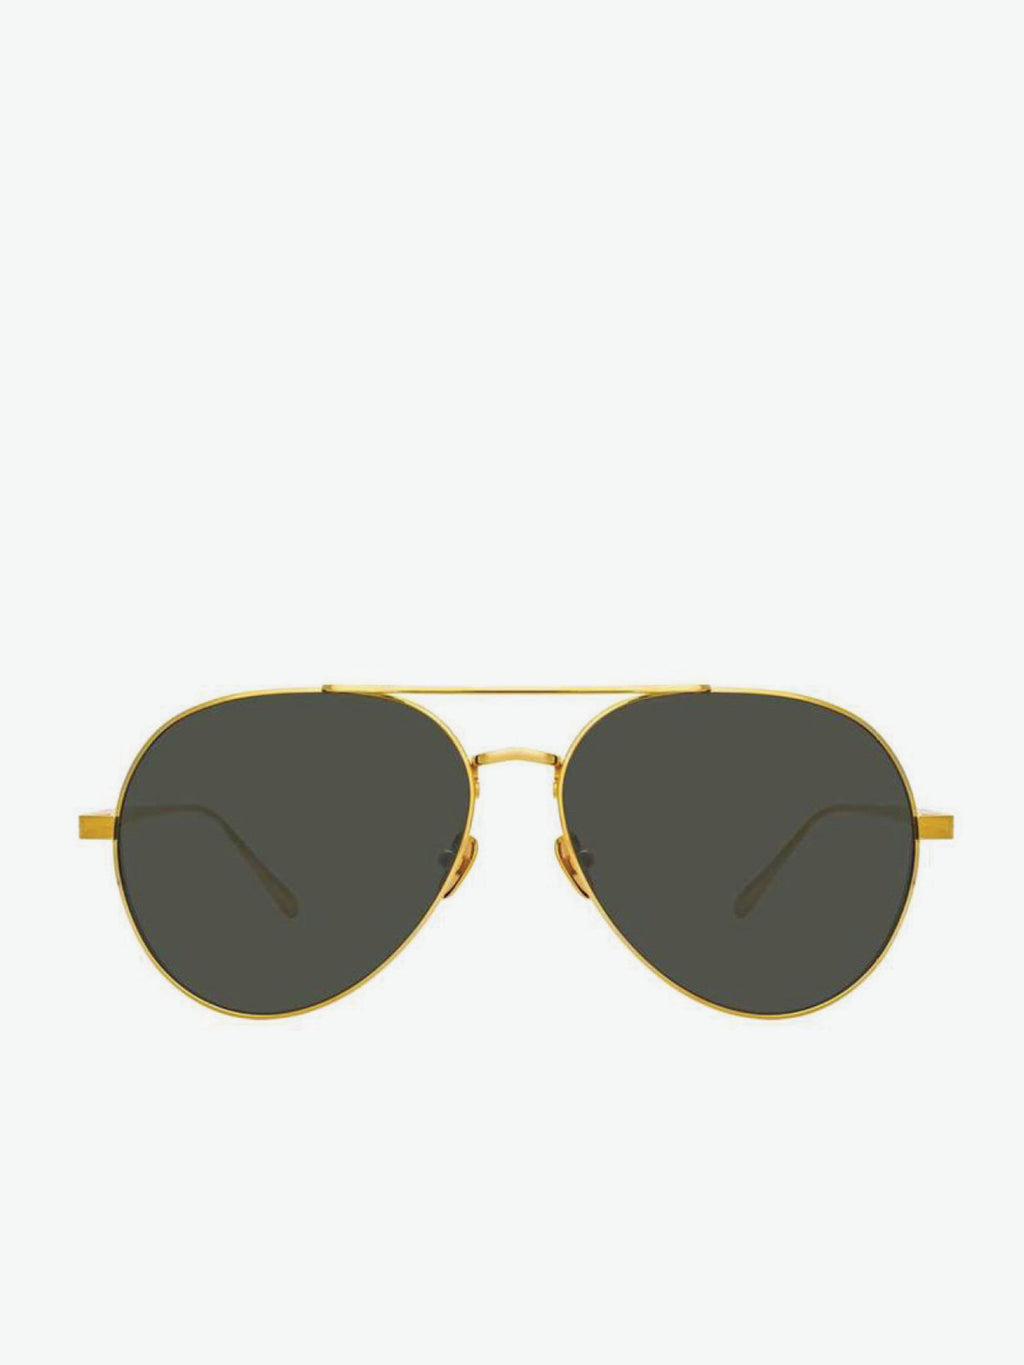 Linda Farrow Gold Aviator Sunglasses | A